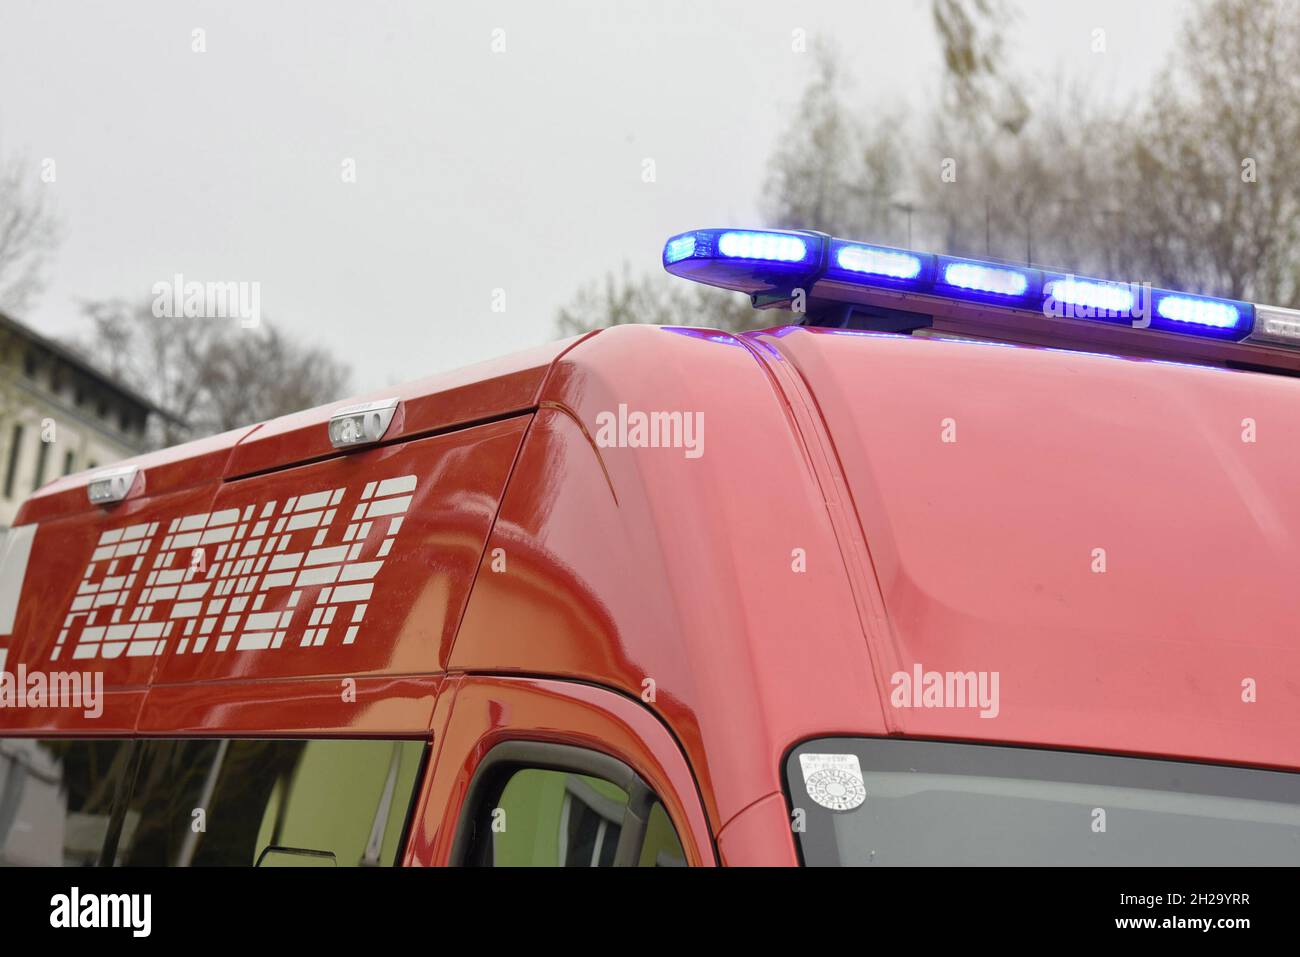 Feuerwehr-Fahrzeug in Oberösterreich, Österreich, Europa - Fire brigade vehicle in Upper Austria, Austria, Europe Stock Photo